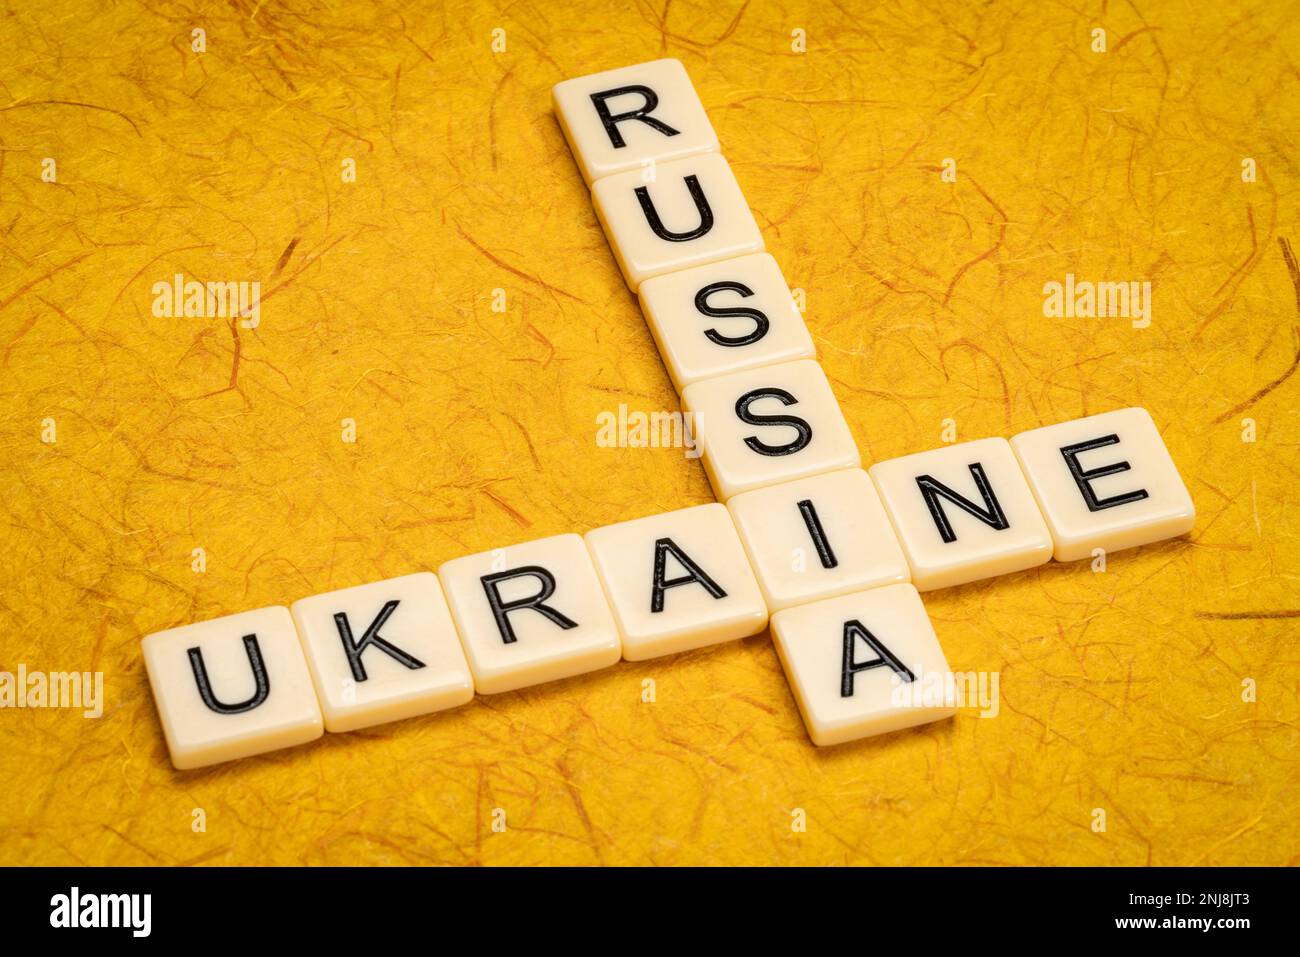 Kreuzworträtsel der Ukraine und Russlands in Elfenbein-Buchstabenkacheln gegen strukturiertes handgefertigtes Papier Stockfoto